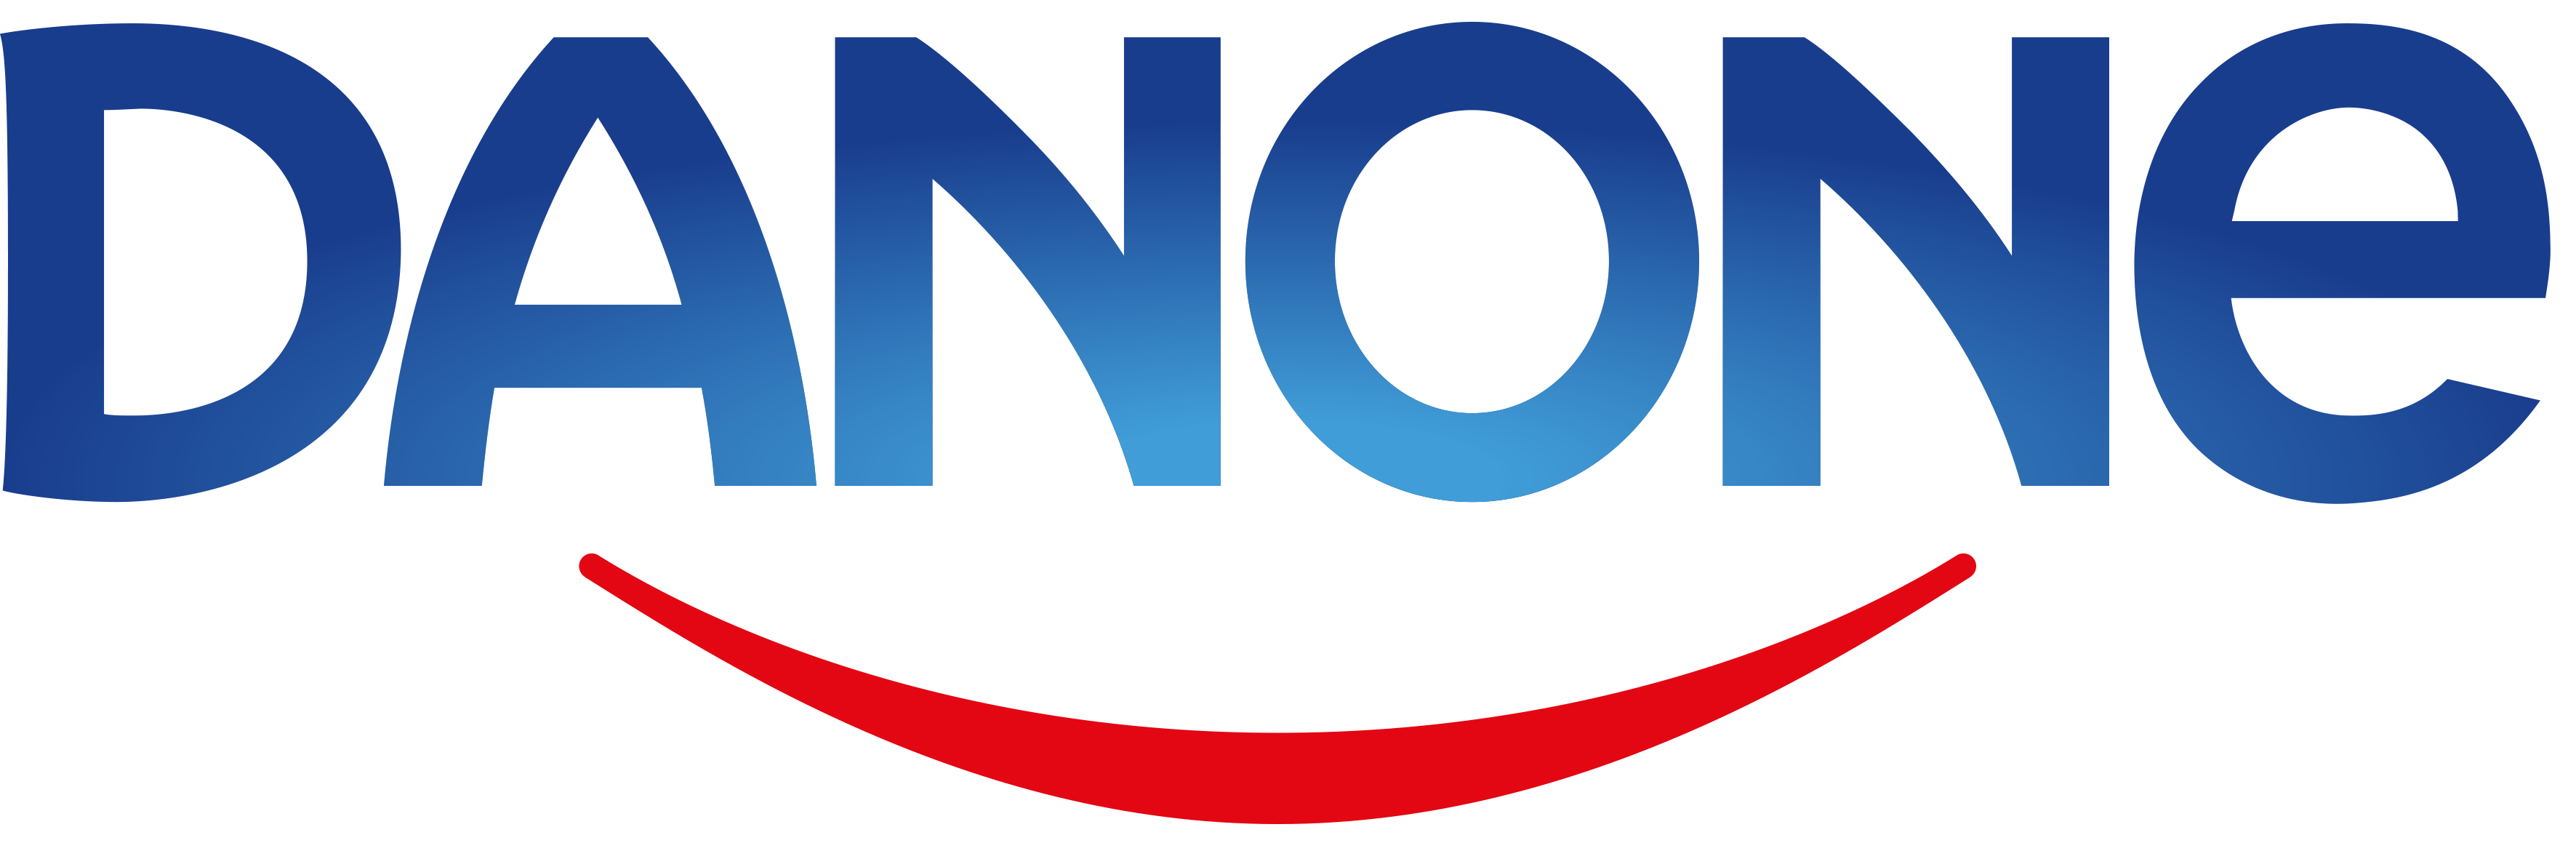 logo Danone produits laitiers